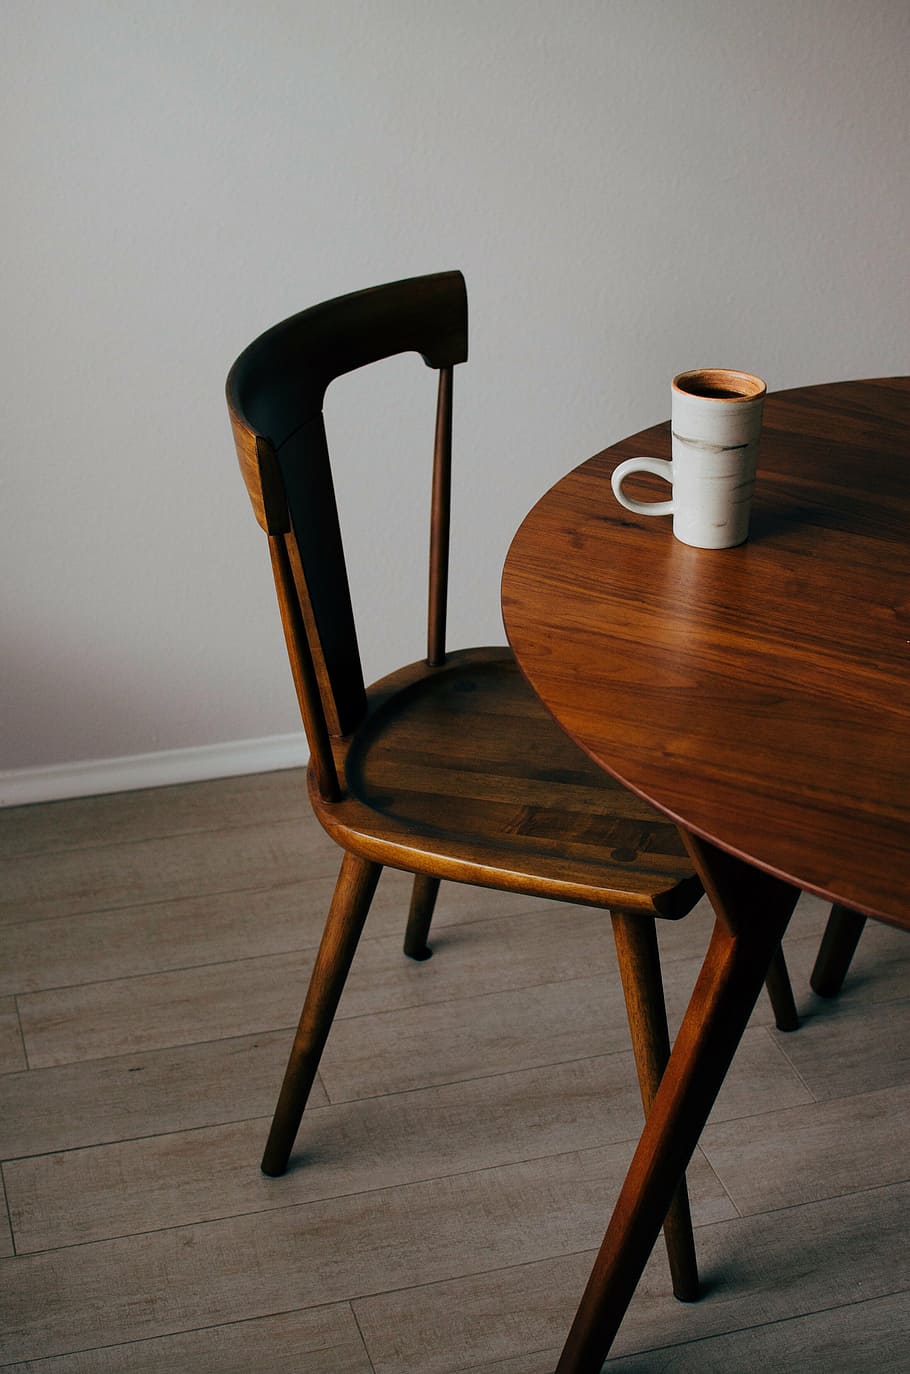 ブラウン, 木製, 椅子, 横, 白, セラミック, コーヒーマグ, テーブル, マグ, カップ